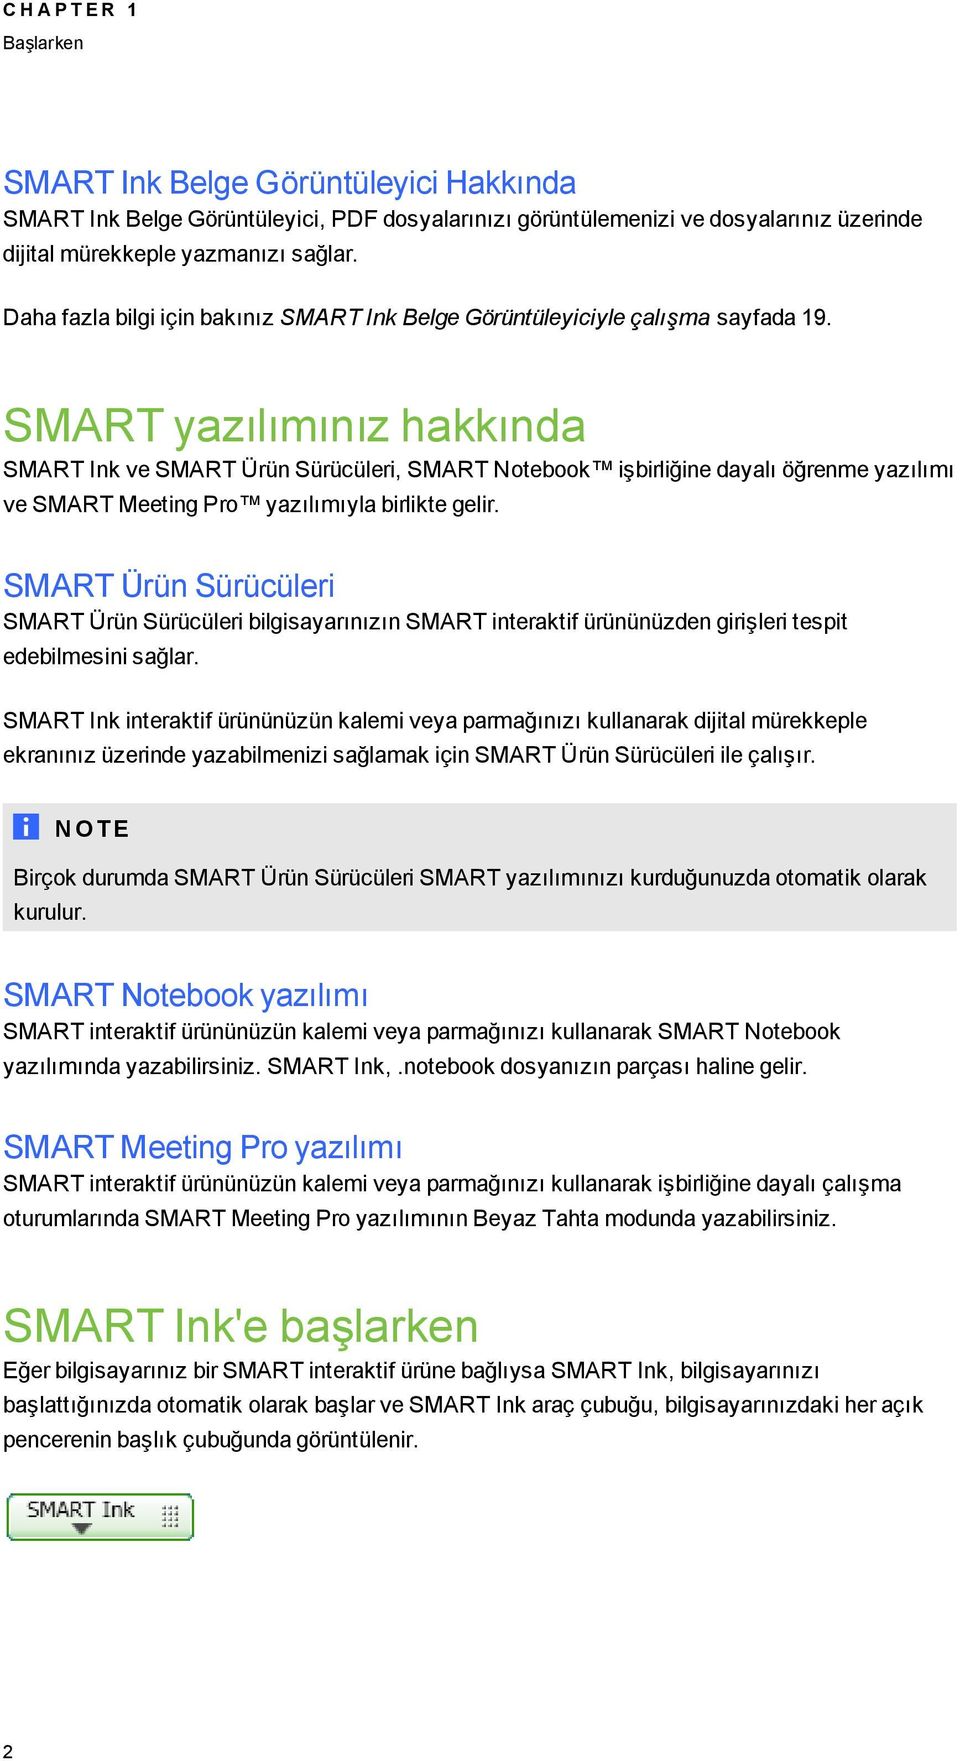 SMART yazılımınız hakkında SMART Ink ve SMART Ürün Sürücüleri, SMART Notebook işbirliğine dayalı öğrenme yazılımı ve SMART Meetin Pro yazılımıyla birlikte elir.